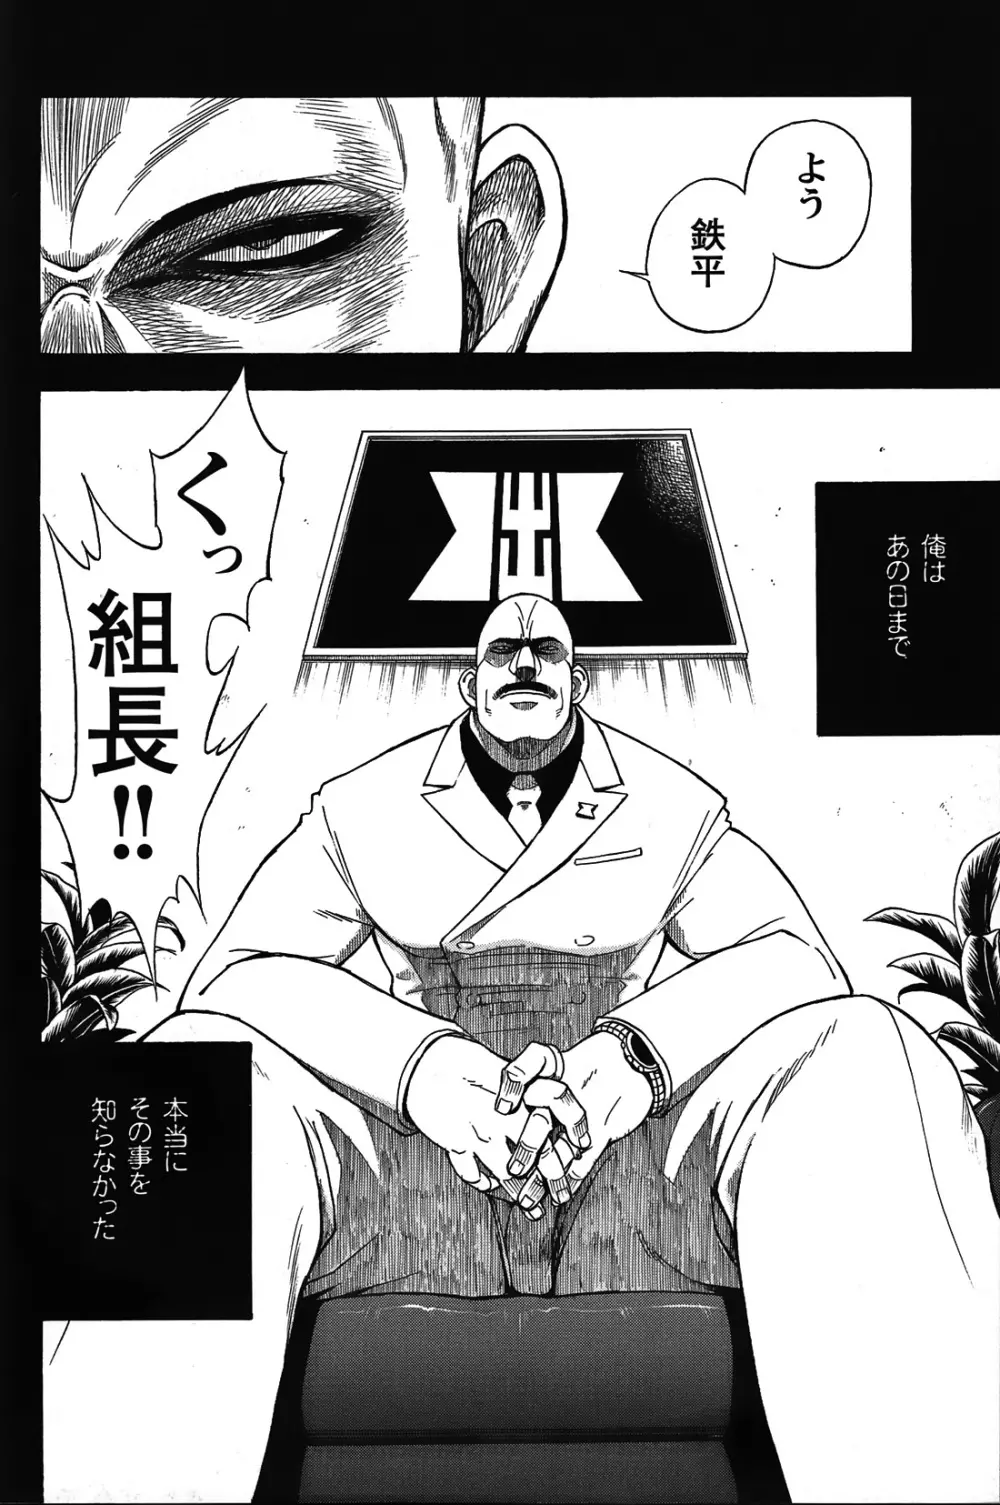 Comic G-men Gaho No.05 44ページ